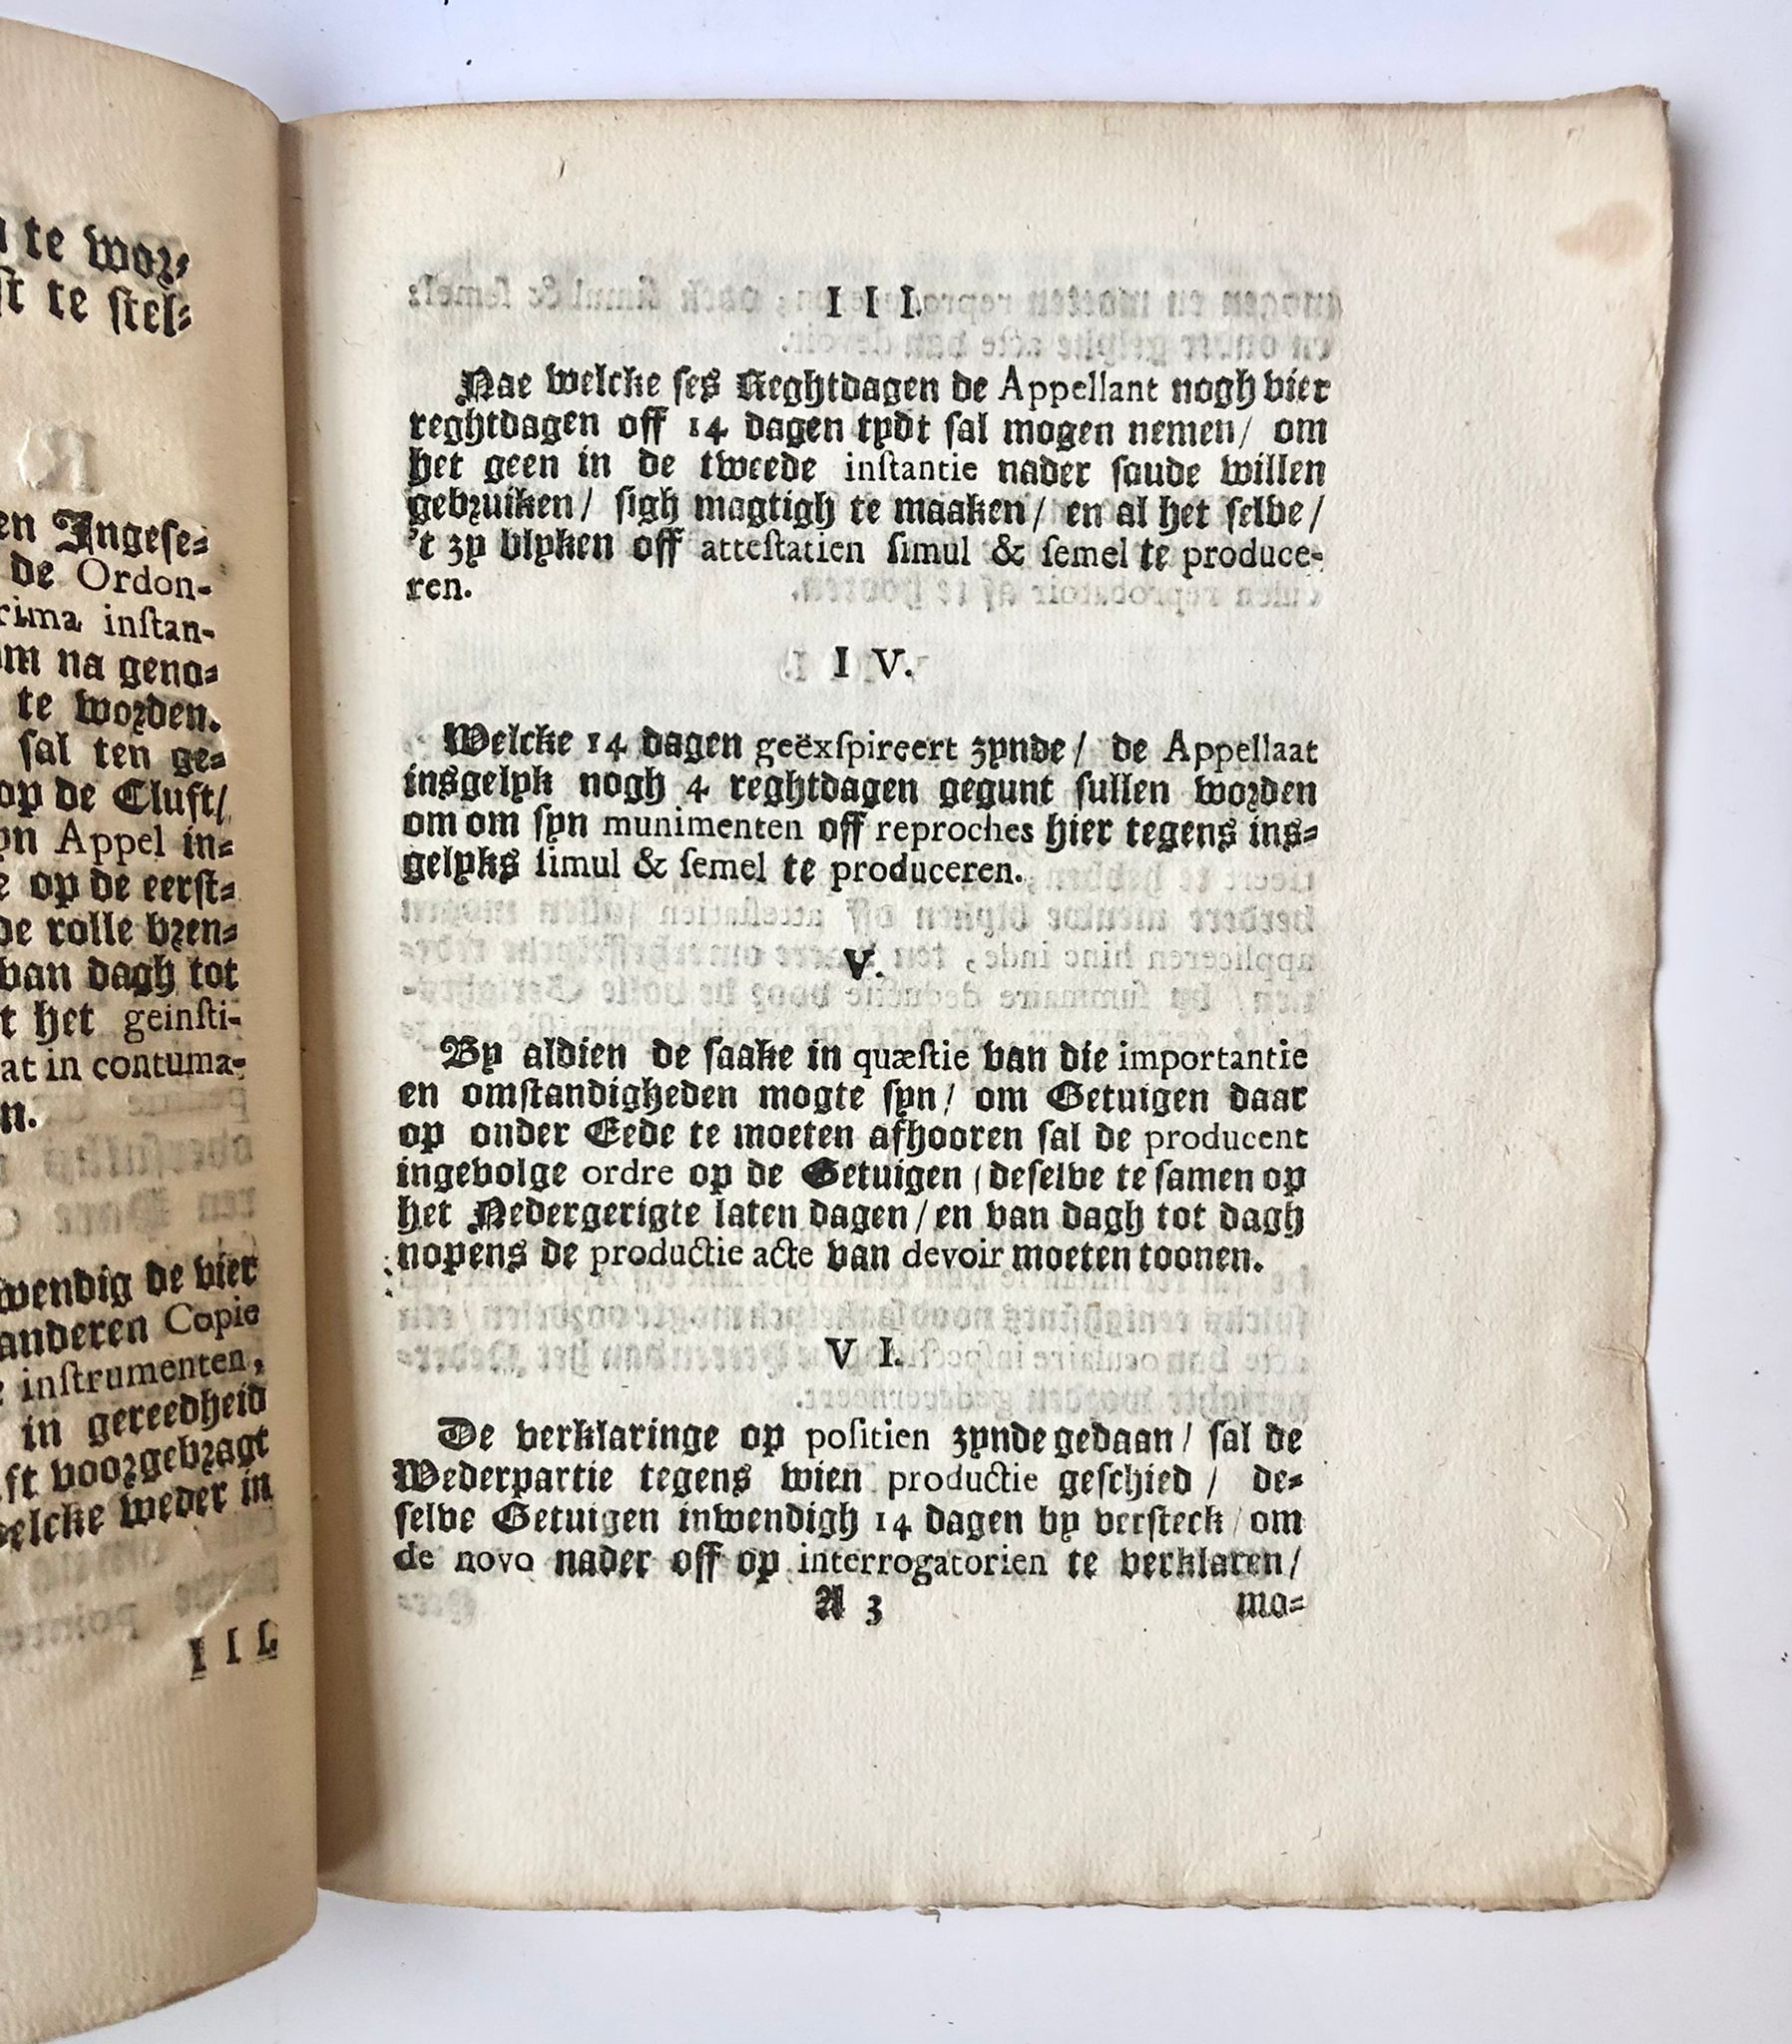 [Groningen, 1743] Reglement tot verkortinge der proceduren in cas d’appel van klufts-oordeelen in Groningen, by Gesina Elama, Te Groningen, 1743, 9 pp.